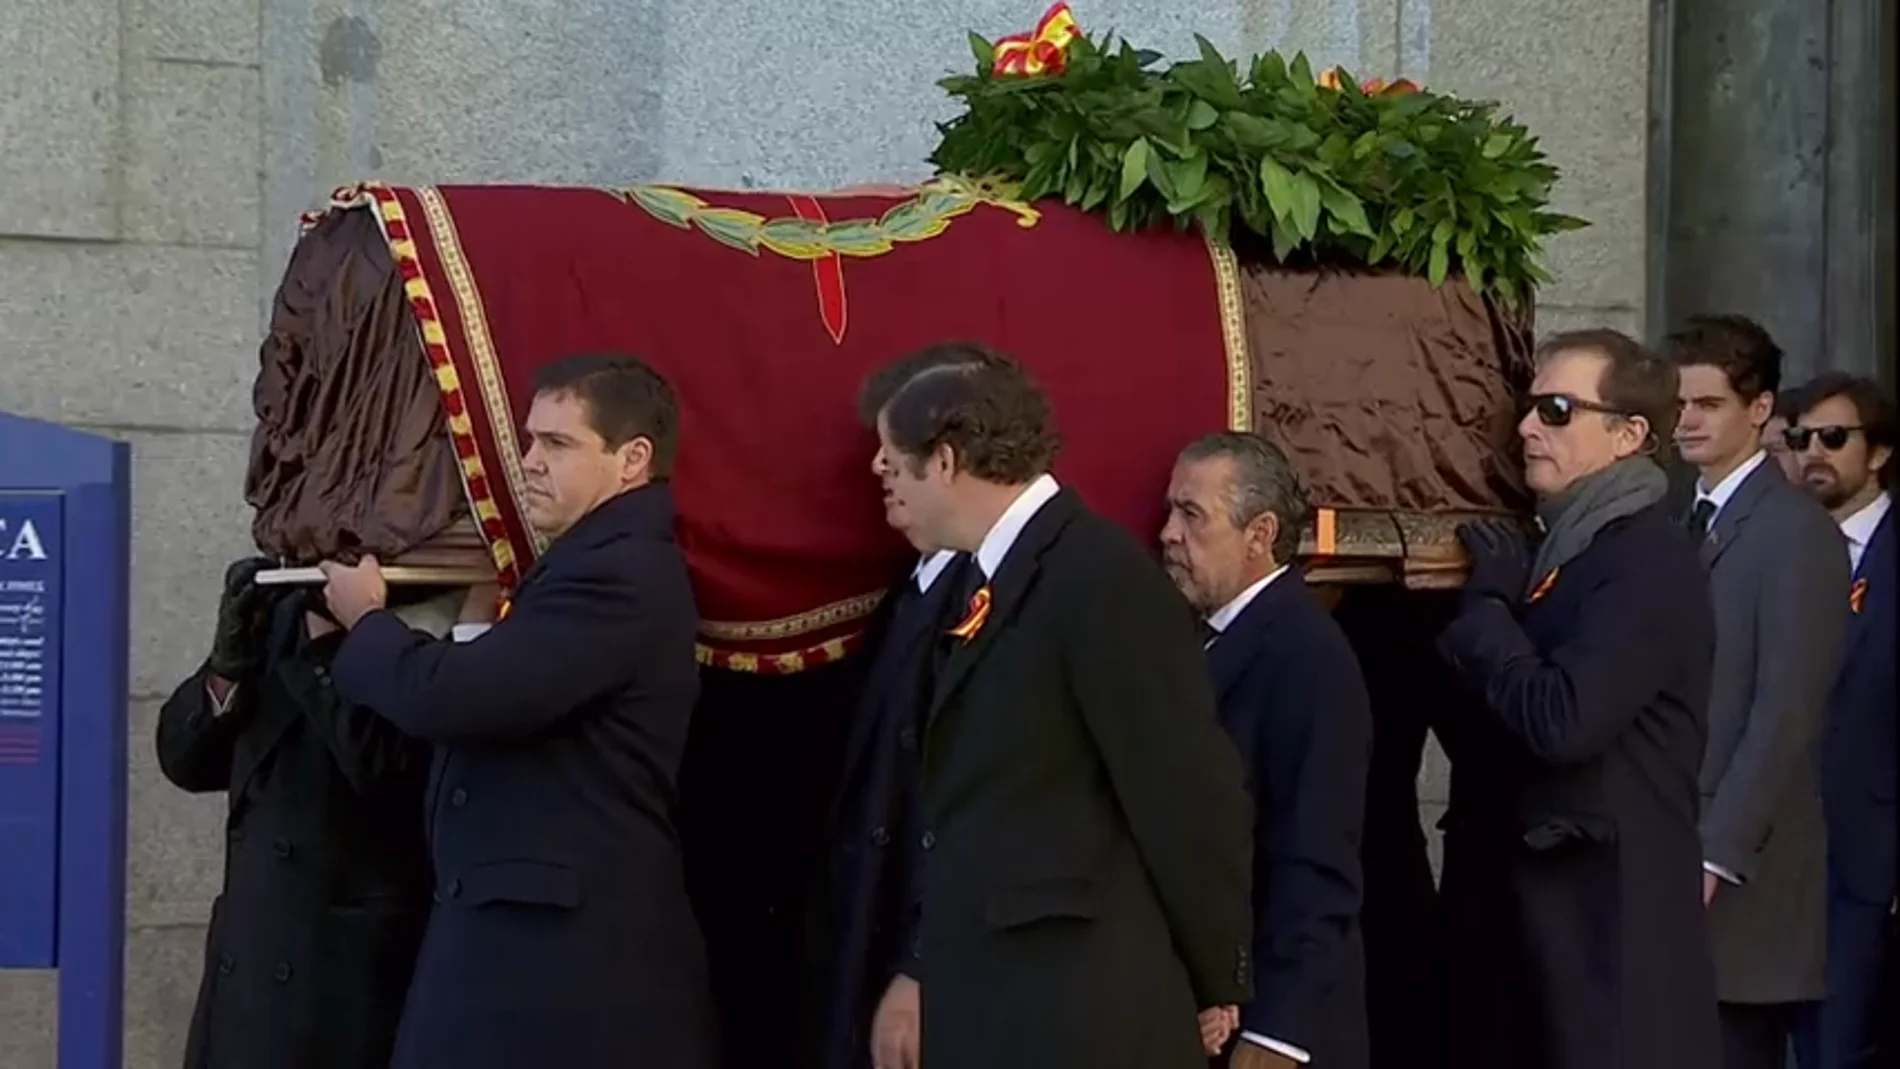 Corona de laurel, rosas, escudo de armas y vivas de la familia para despedir a Franco